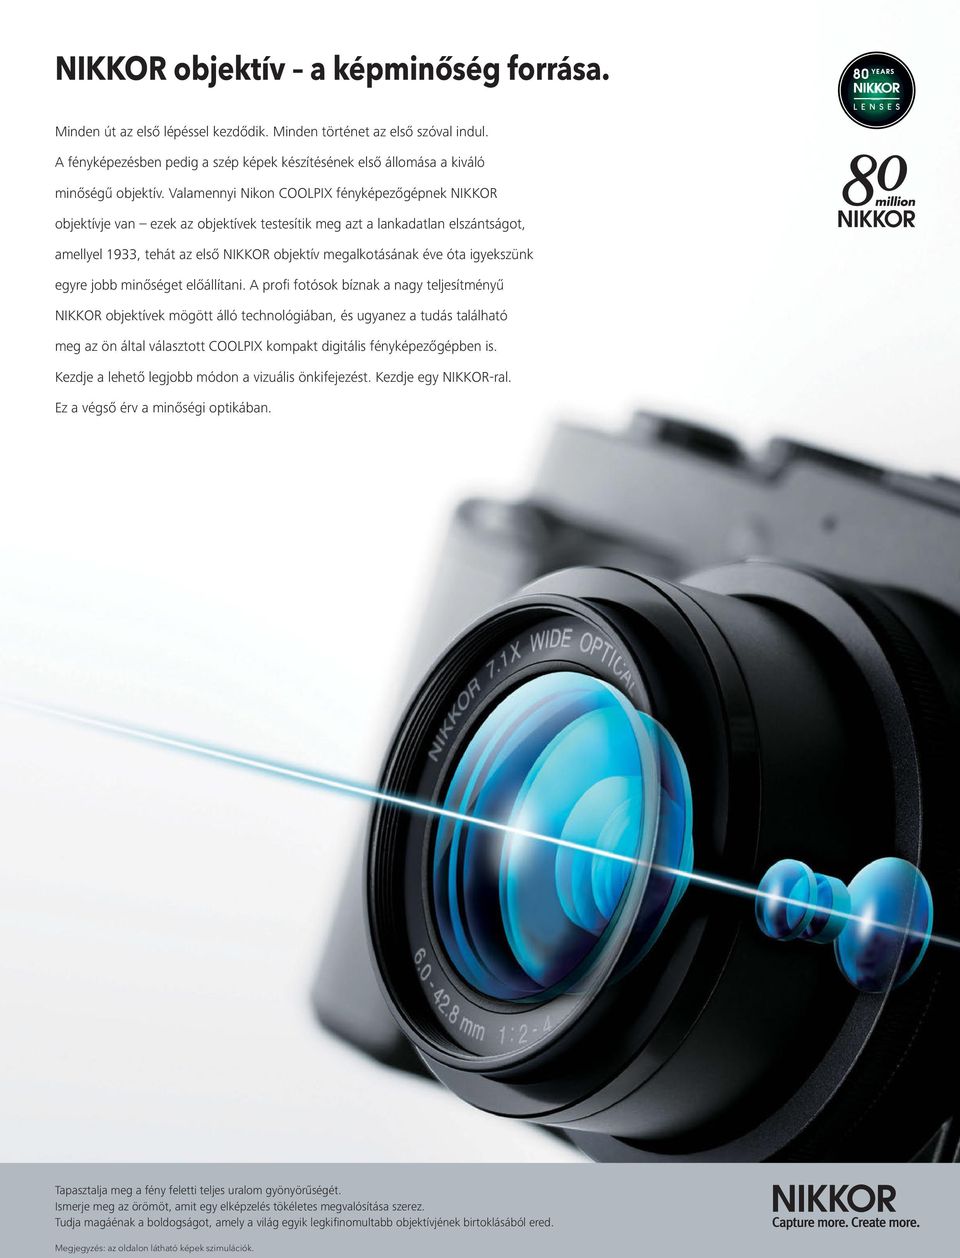 Valamennyi Nikon COOLPIX fényképezőgépnek NIKKOR objektívje van ezek az objektívek testesítik meg azt a lankadatlan elszántságot, amellyel 1933, tehát az első NIKKOR objektív megalkotásának éve óta